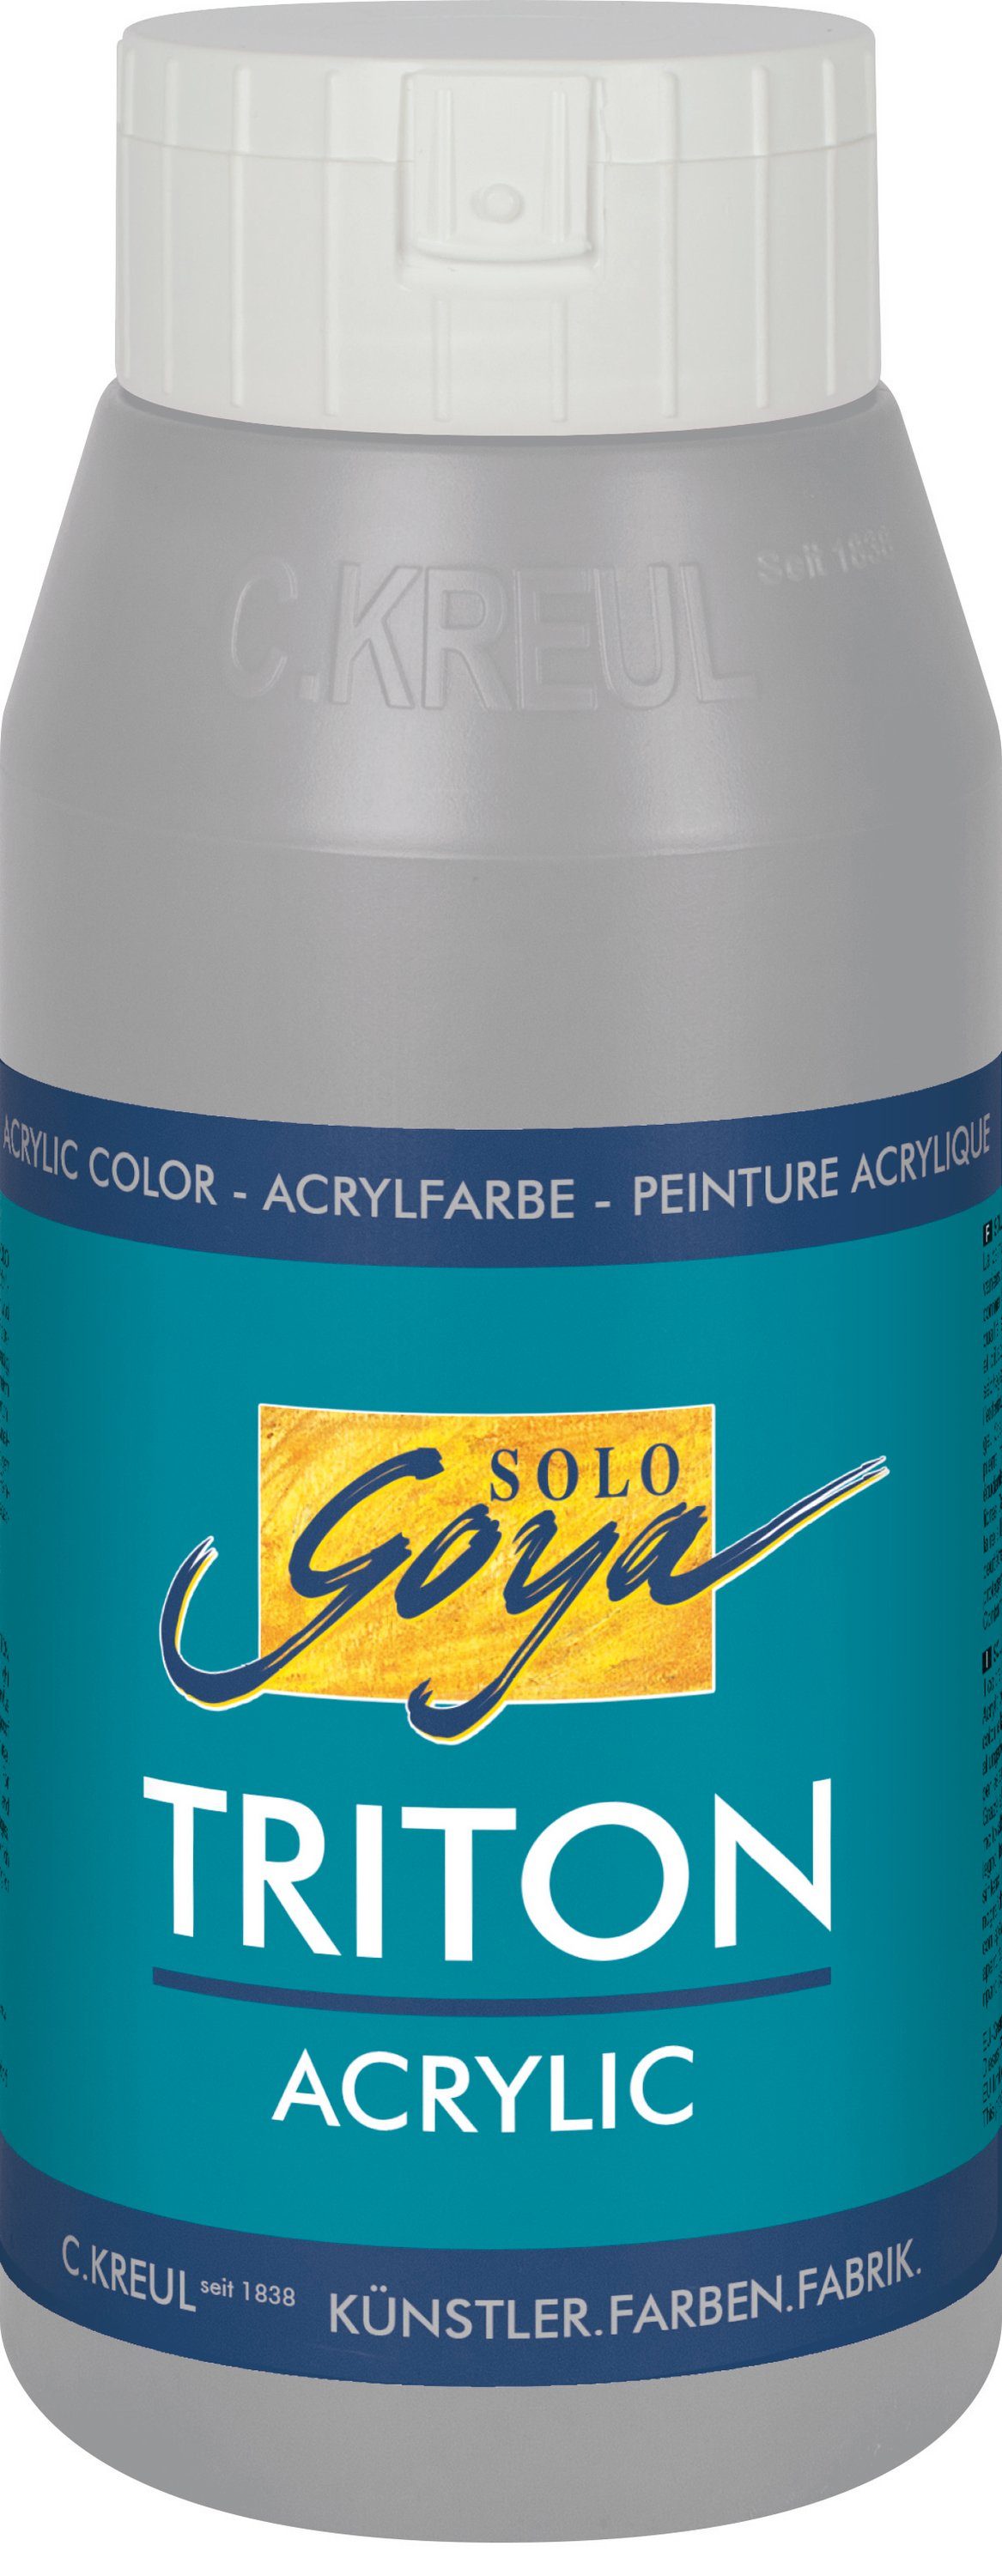 Kreul Acrylfarbe Solo Goya Triton Acrylic, 750 ml Neutralgrau